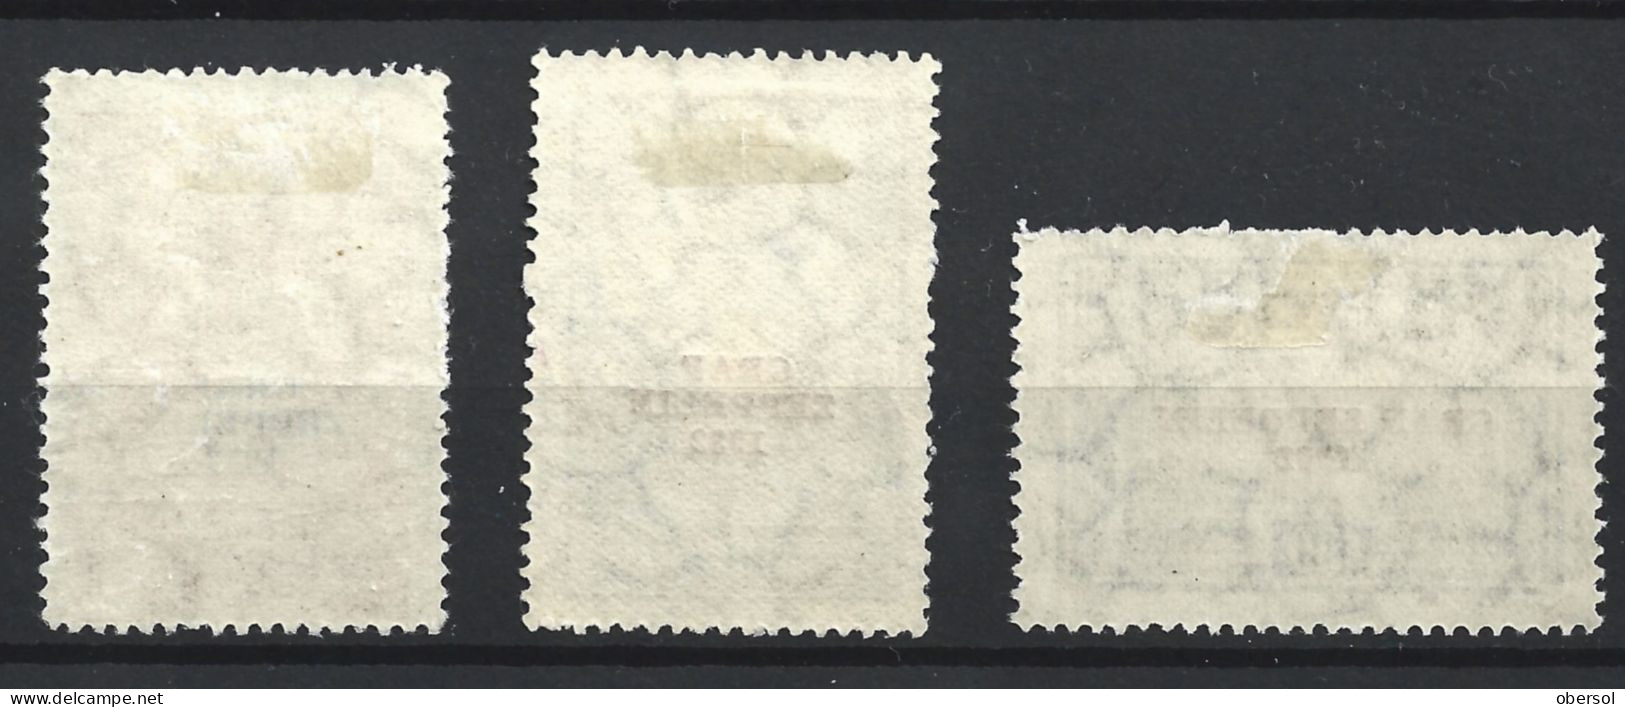 Argentina 1932 Graf Zeppelin Overprint Complete Set MH Stamps ** HCV ** - Neufs